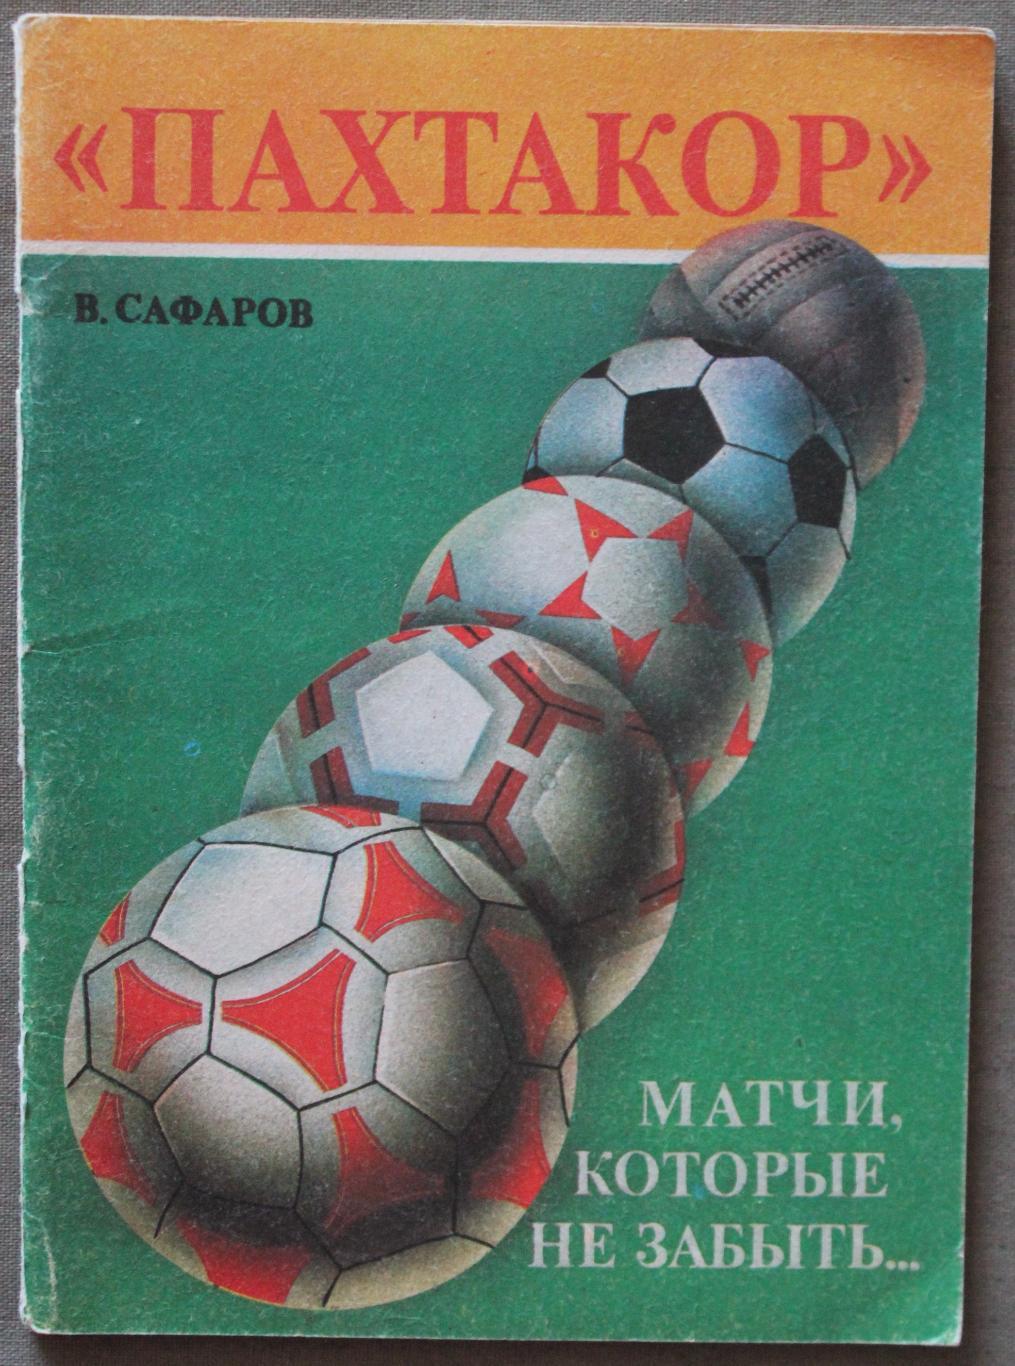 Владимир Сафаров Пахтакор: матчи, которые не забыть... с автографом автора